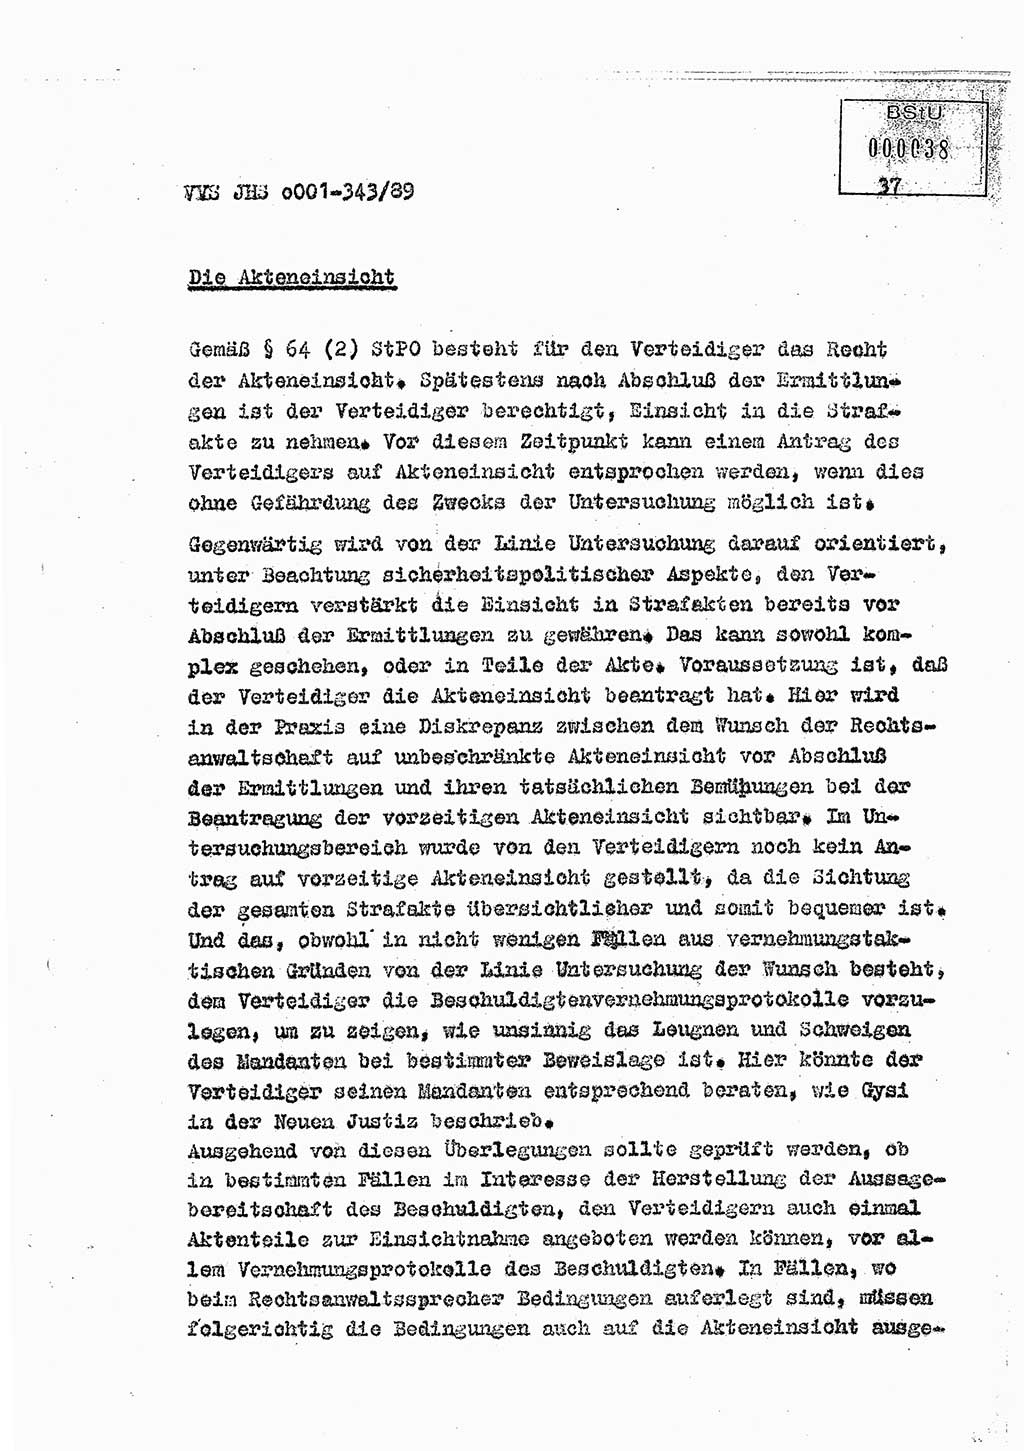 Diplomarbeit Offiziersschüler Axel Henschke (HA Ⅸ/9), Ministerium für Staatssicherheit (MfS) [Deutsche Demokratische Republik (DDR)], Juristische Hochschule (JHS), Vertrauliche Verschlußsache (VVS) o001-343/89, Potsdam 1989, Seite 37 (Dipl.-Arb. MfS DDR JHS VVS o001-343/89 1989, S. 37)